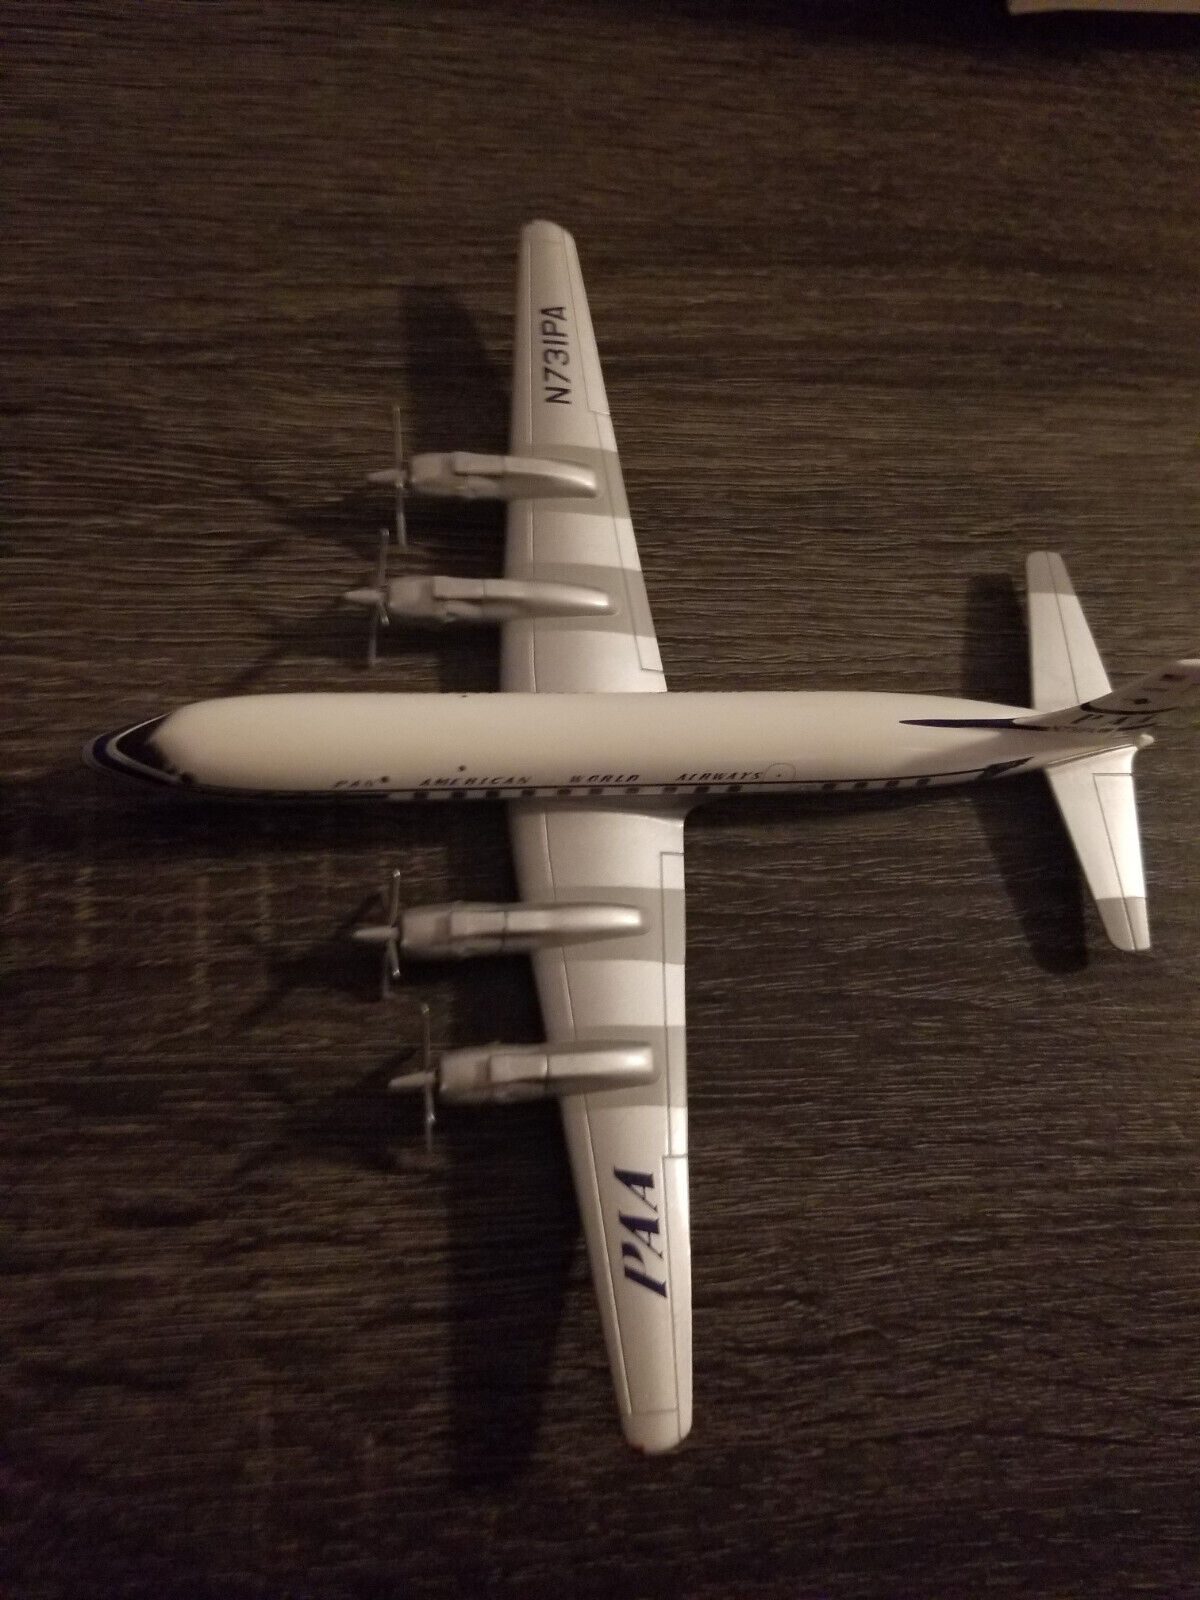 Pan American World Airways N731PA Model Plane